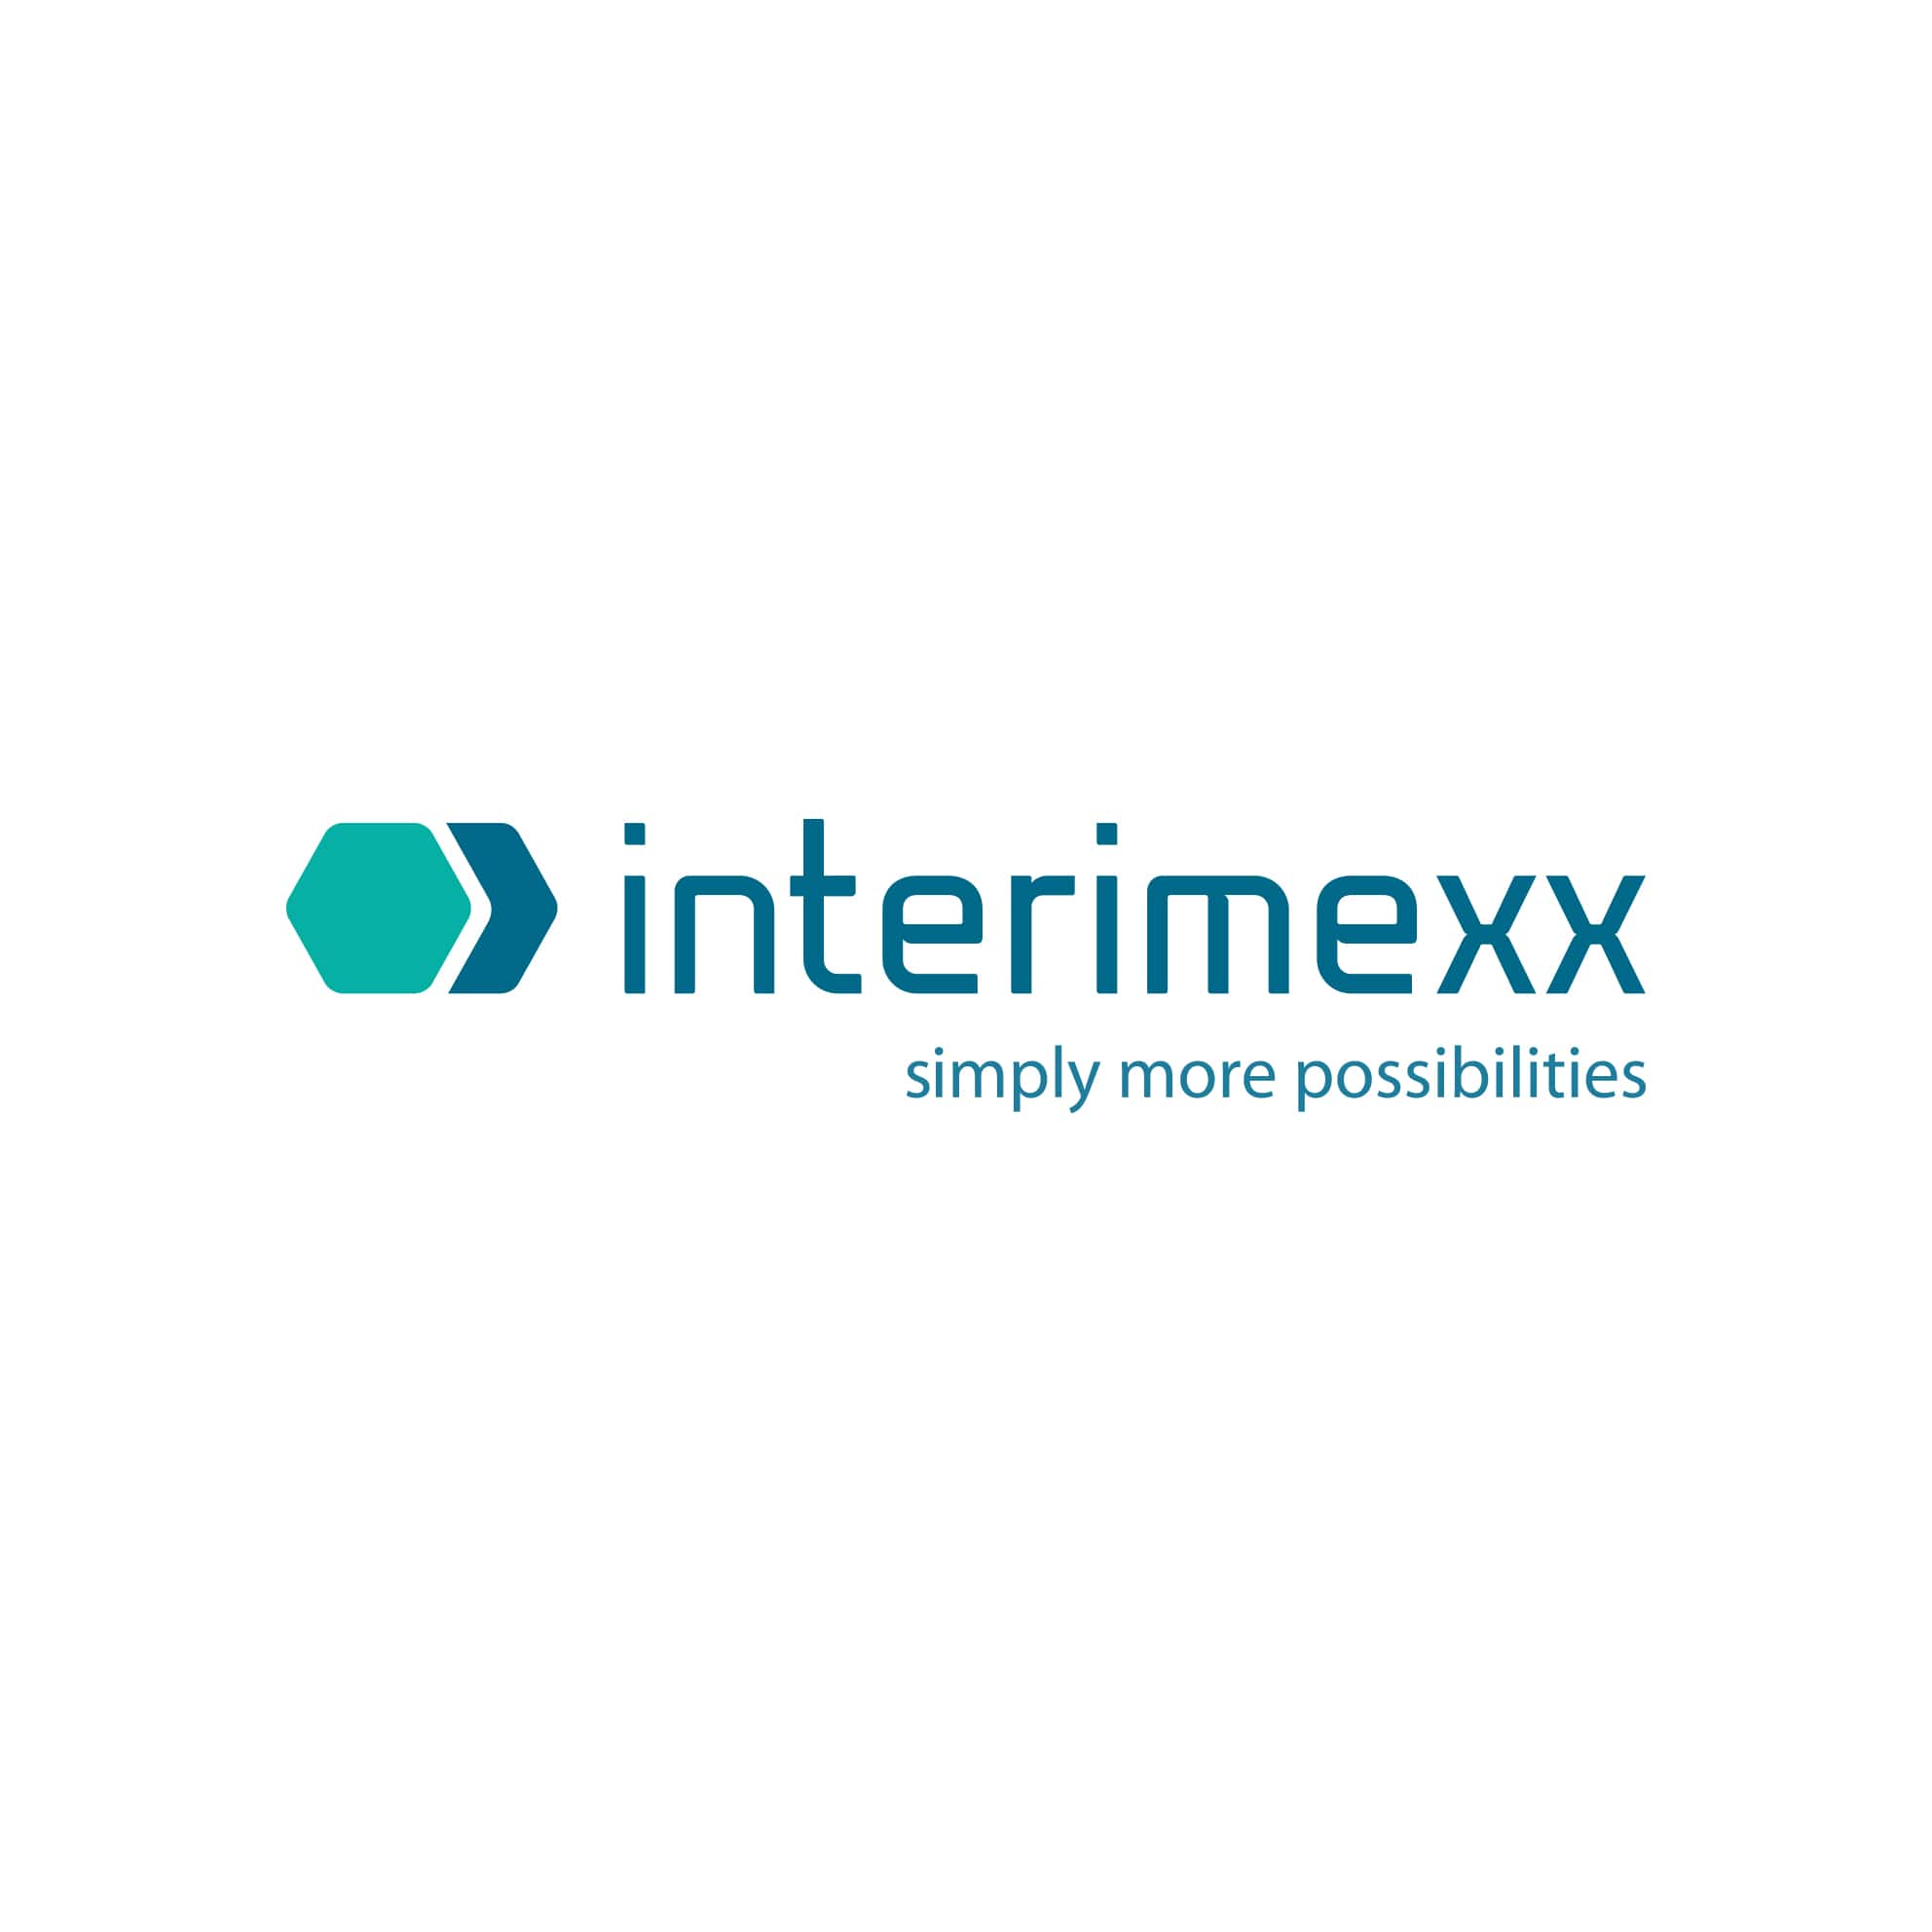 Interimexx - Logoentwicklung und Farbkonzept